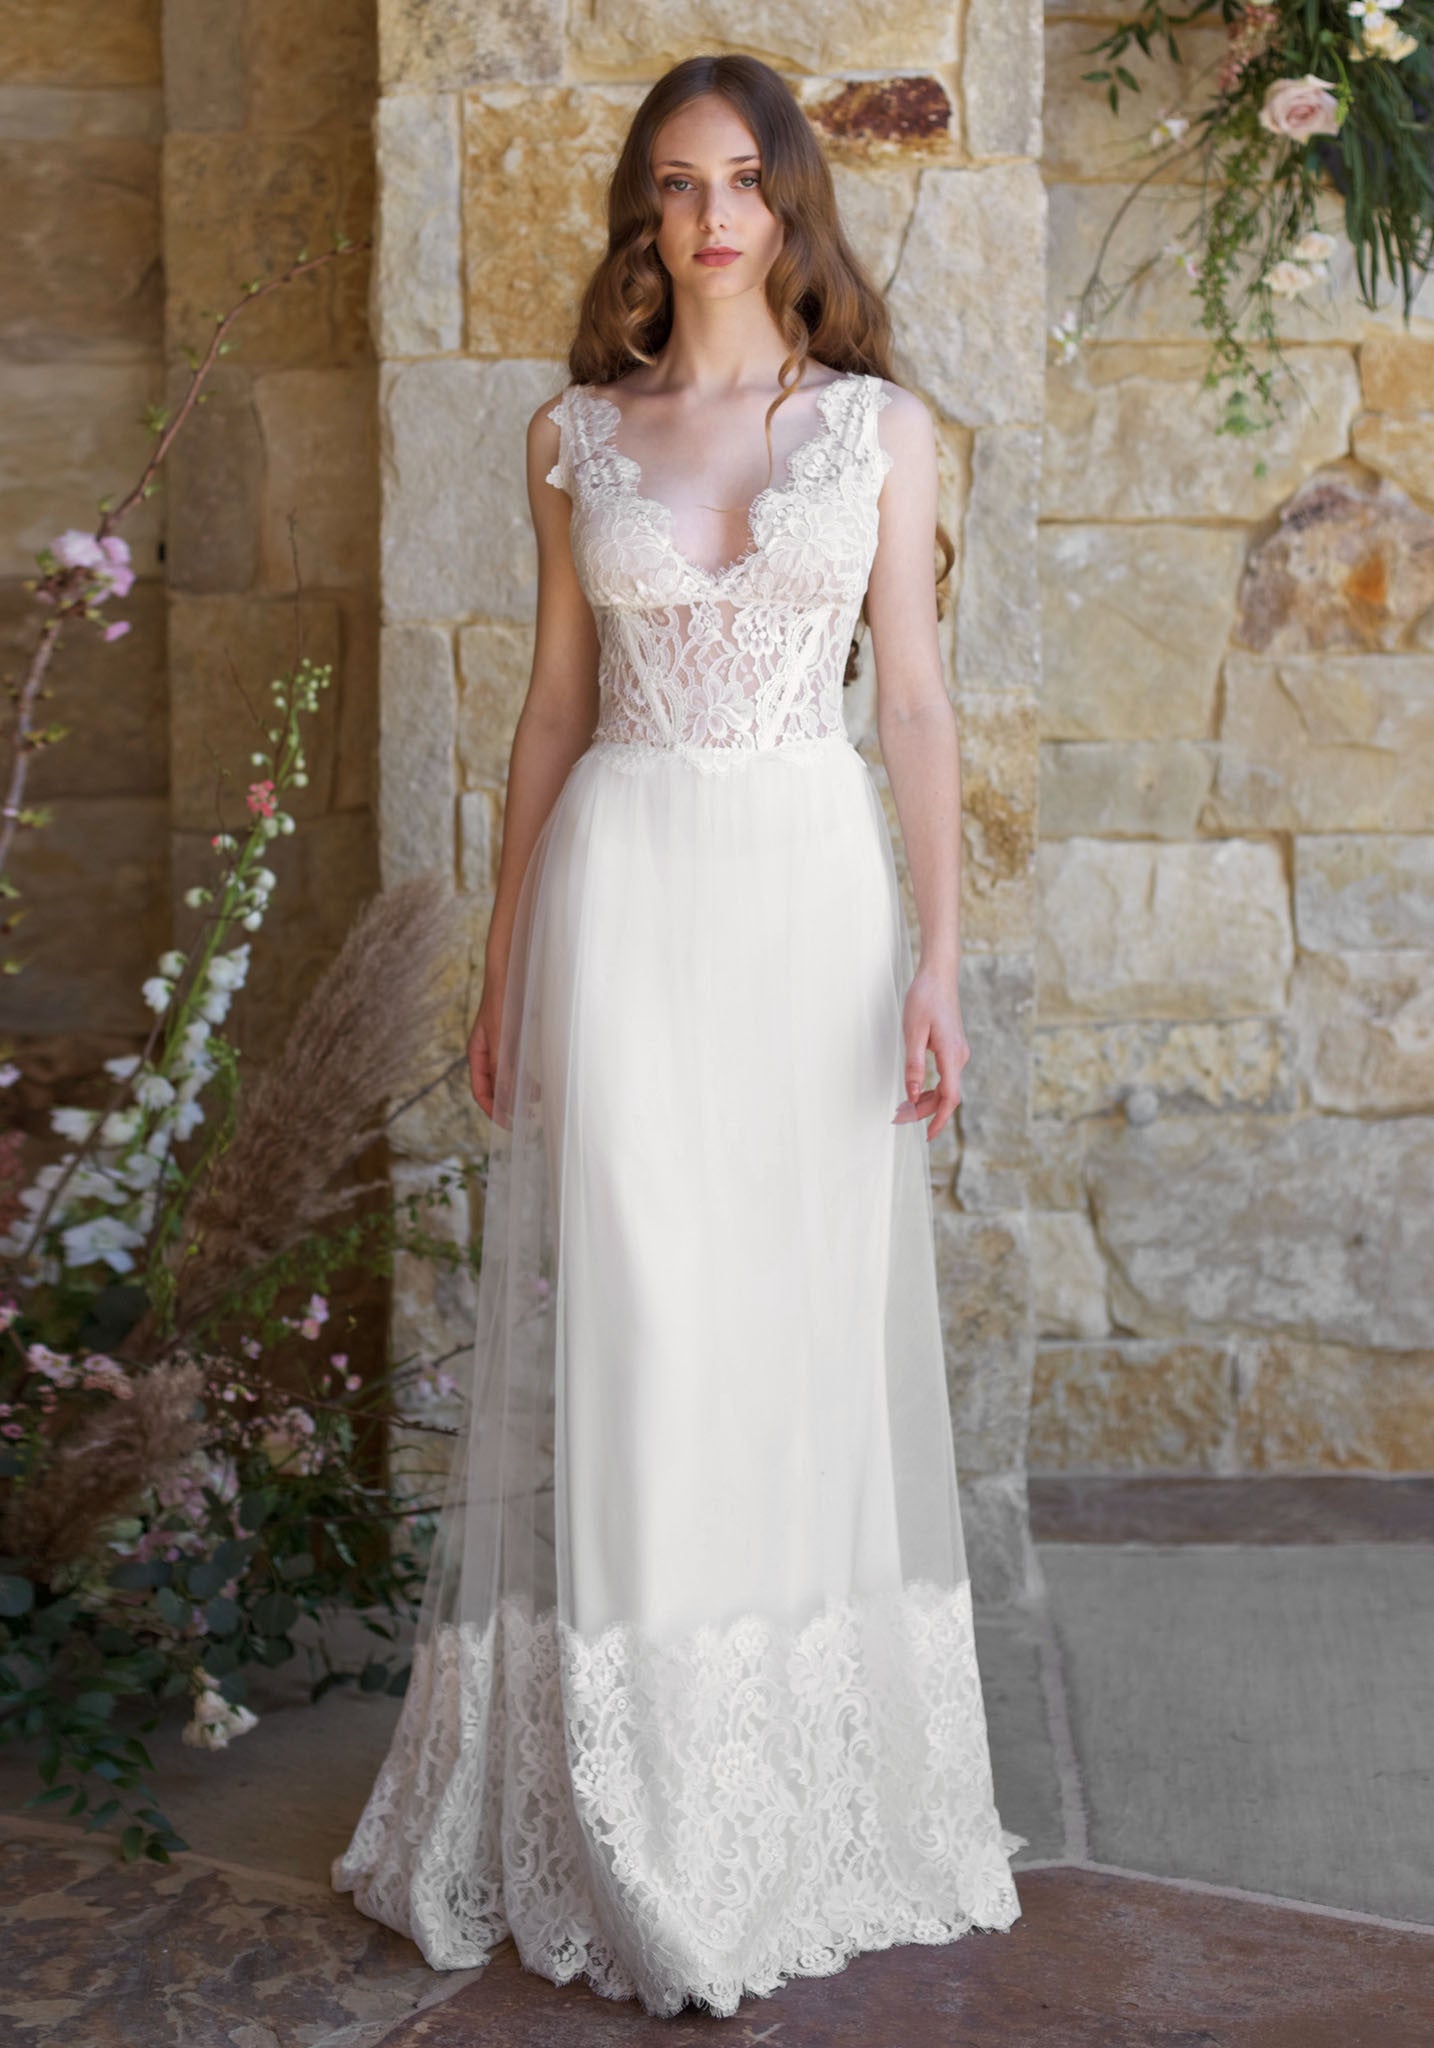 Chardonnay Vintage Cotton Lace Wedding Dress | Claire Pettibone ...